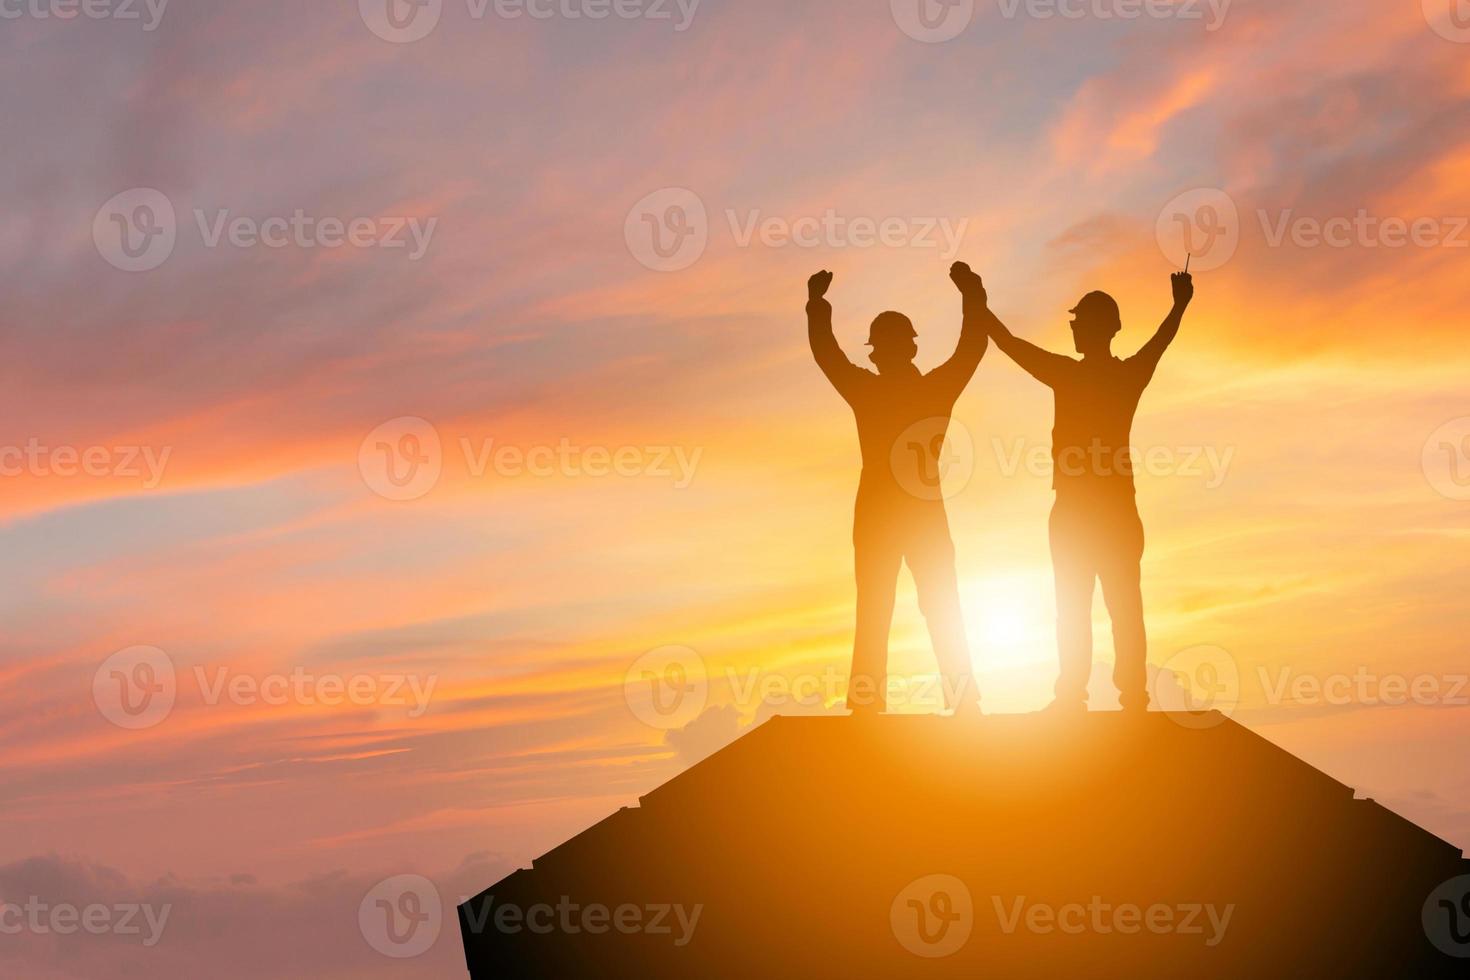 Schattenbild des Wirtschaftsingenieurmannes mit Beschneidungspfadfeiererfolgsglück auf Behälterkastenabendhimmel-Sonnenunterganghintergrund, Teamwork-Konzept foto